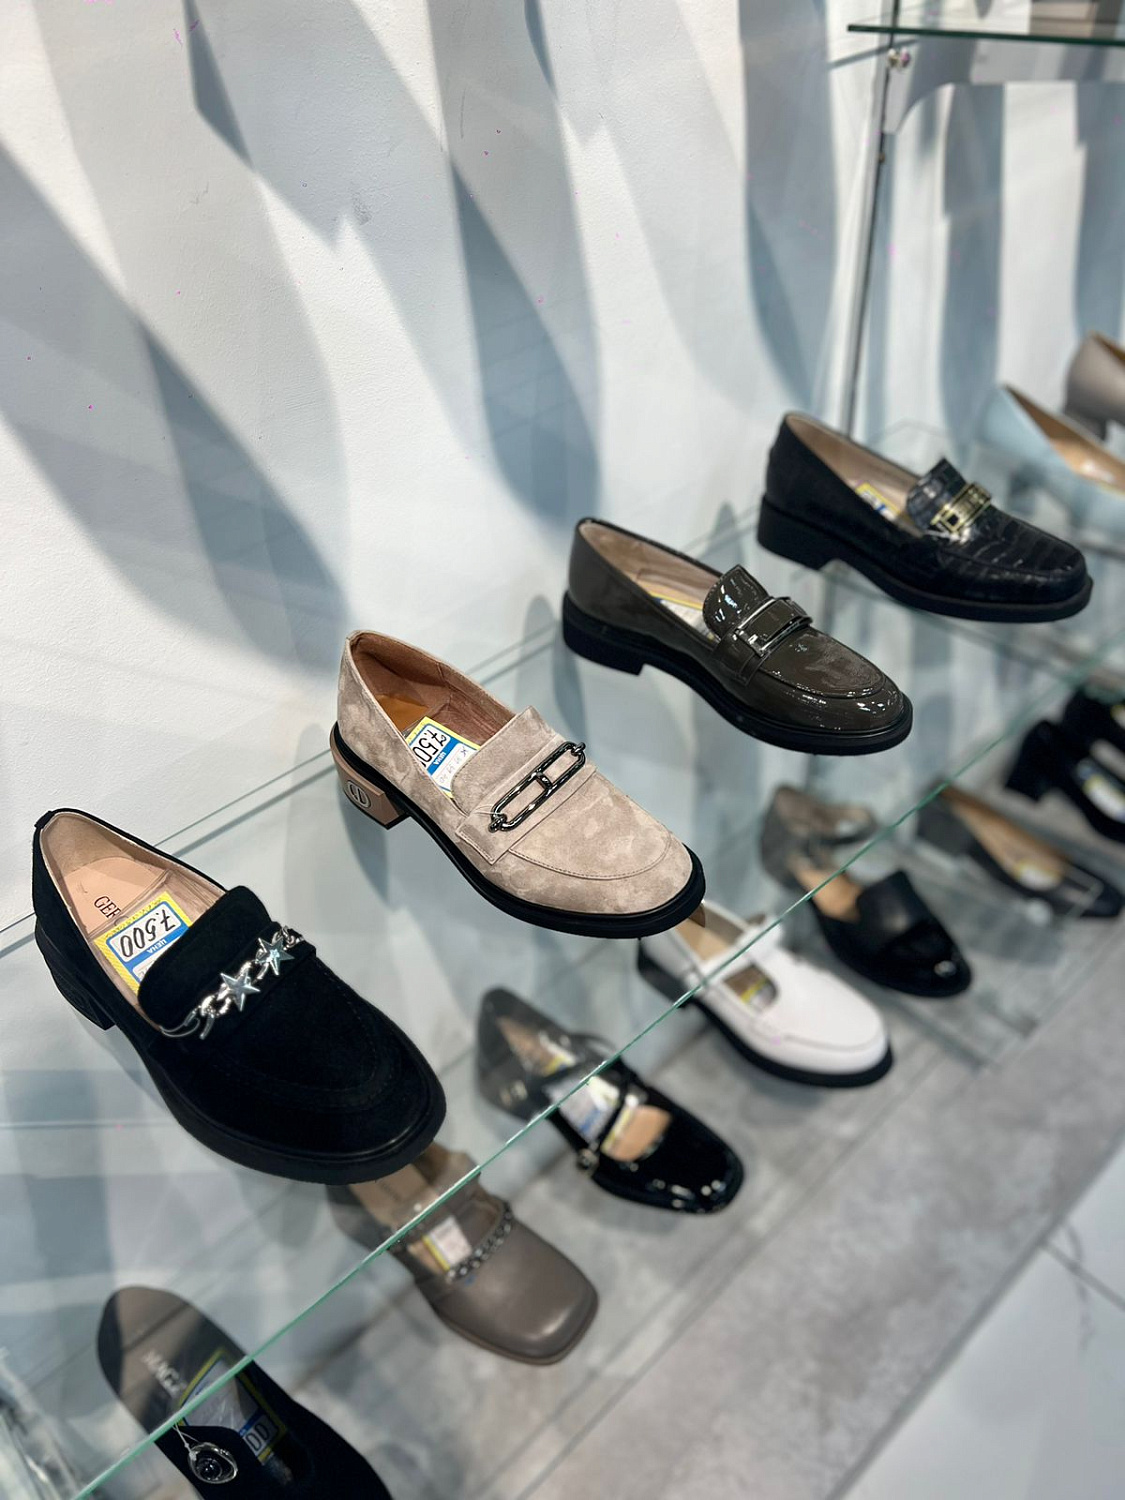 Новая коллекция обуви в магазине "Скороход"